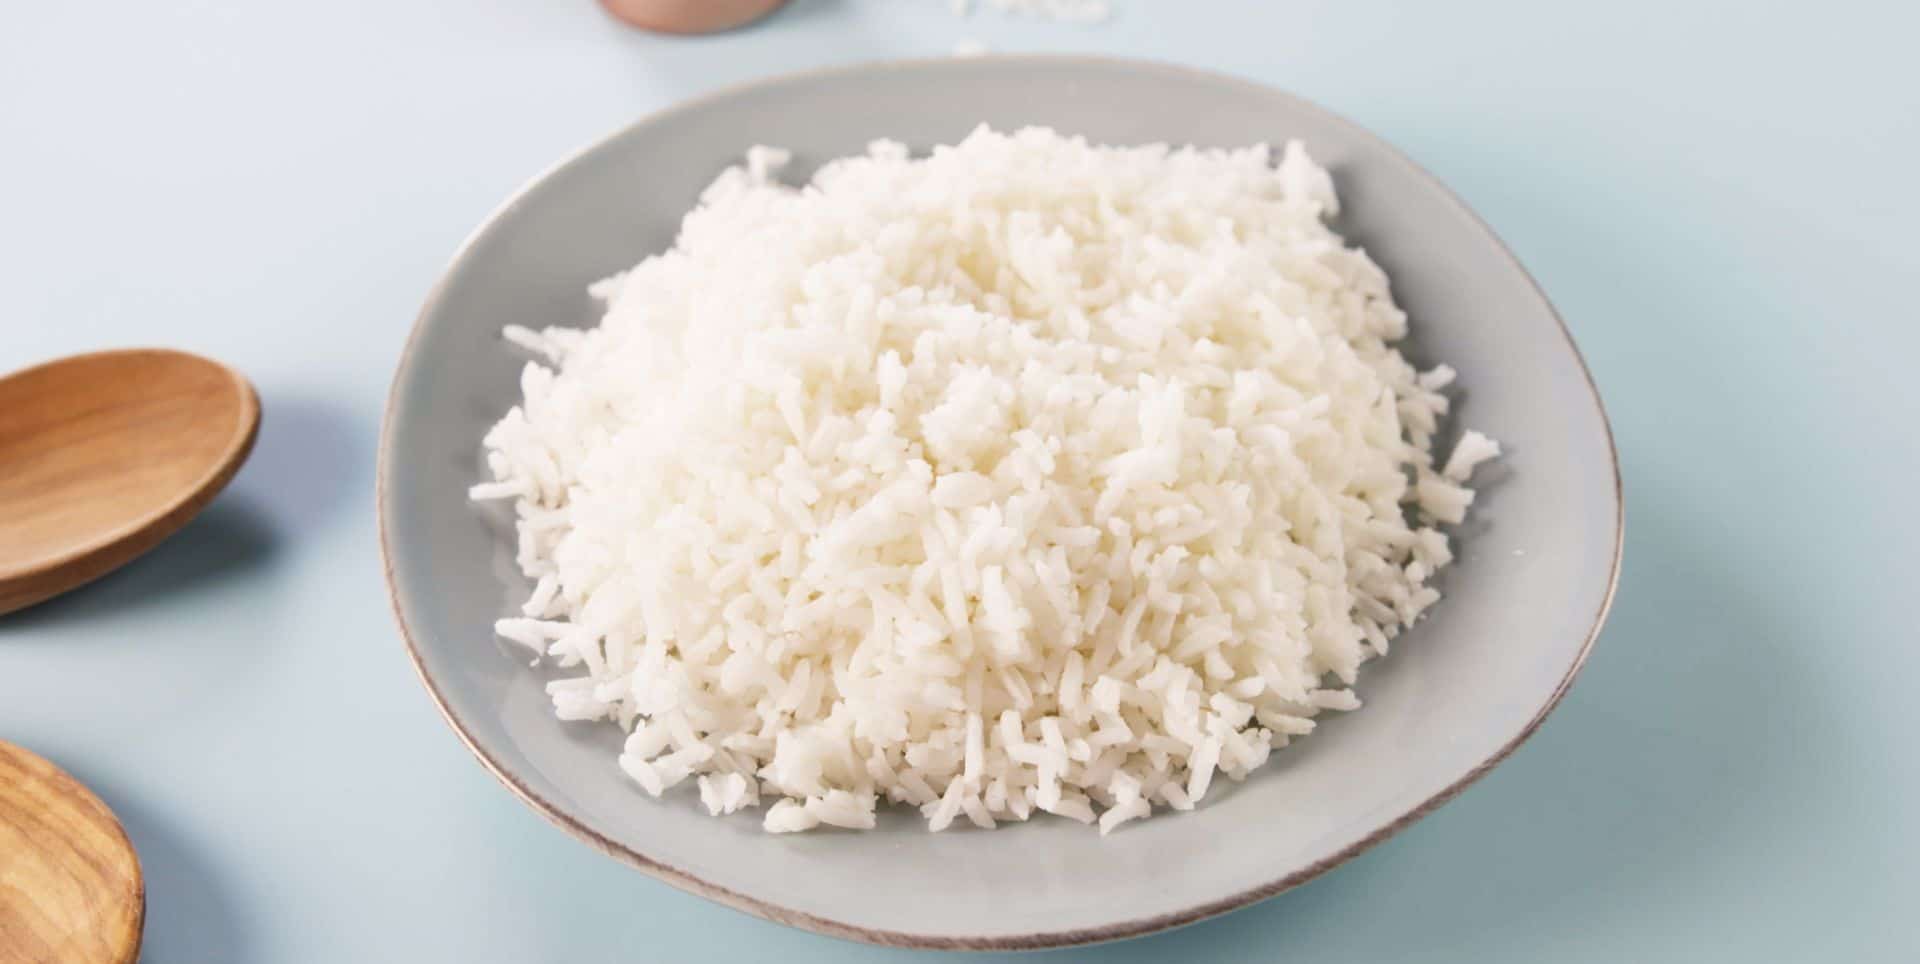 قیمت برنج طارم اصل با کیفیت ارزان + خرید عمده